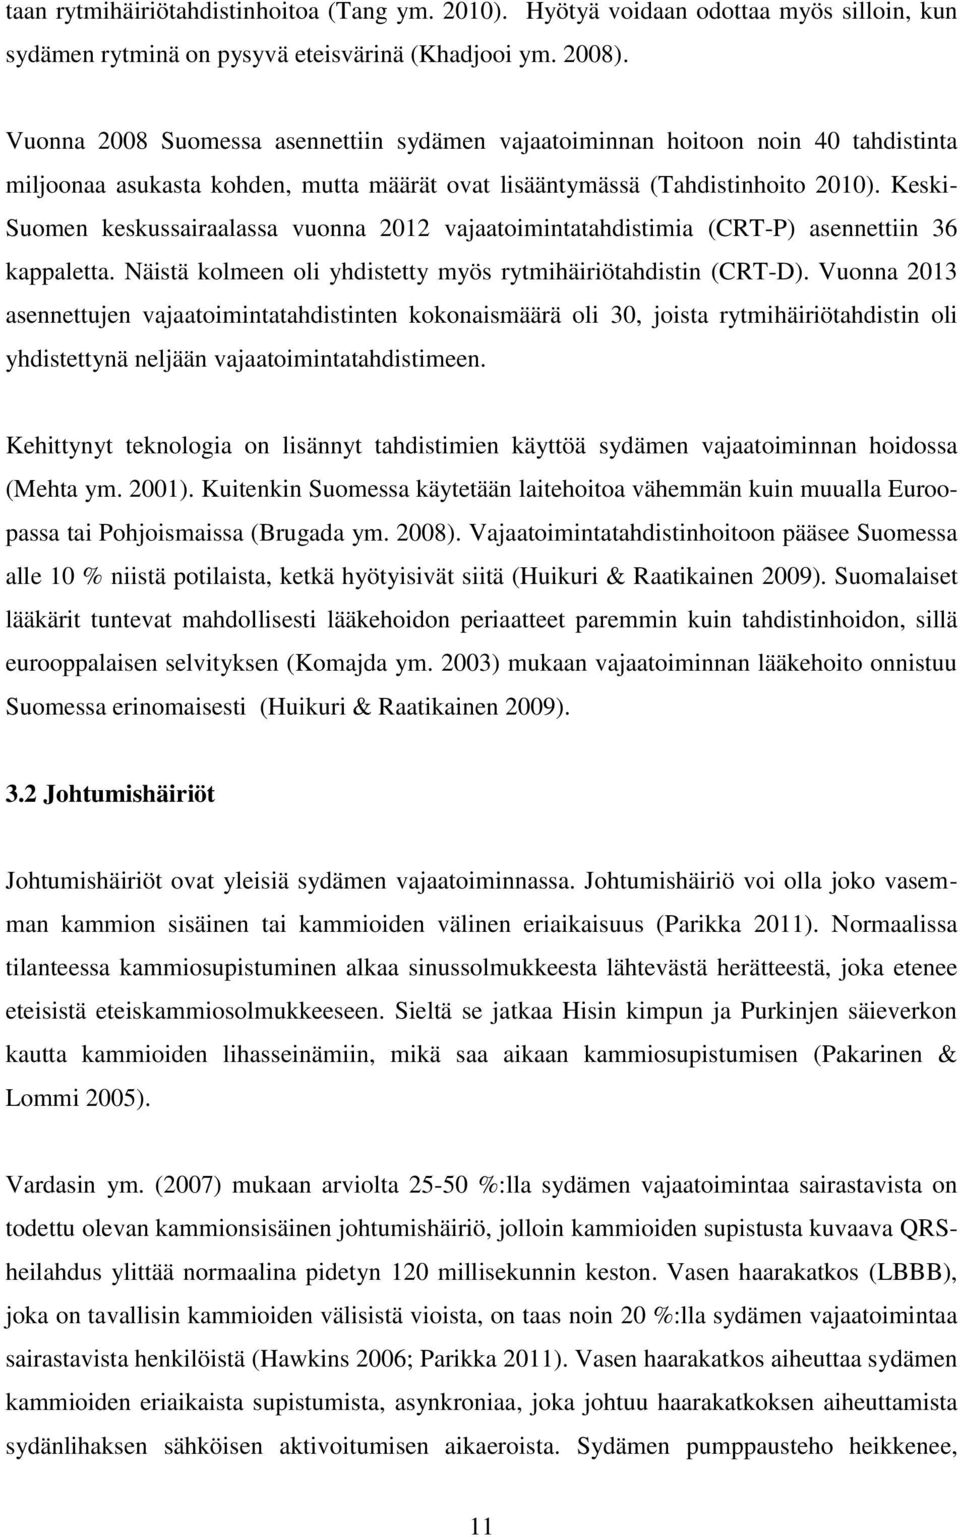 Keski- Suomen keskussairaalassa vuonna 2012 vajaatoimintatahdistimia (CRT-P) asennettiin 36 kappaletta. Näistä kolmeen oli yhdistetty myös rytmihäiriötahdistin (CRT-D).